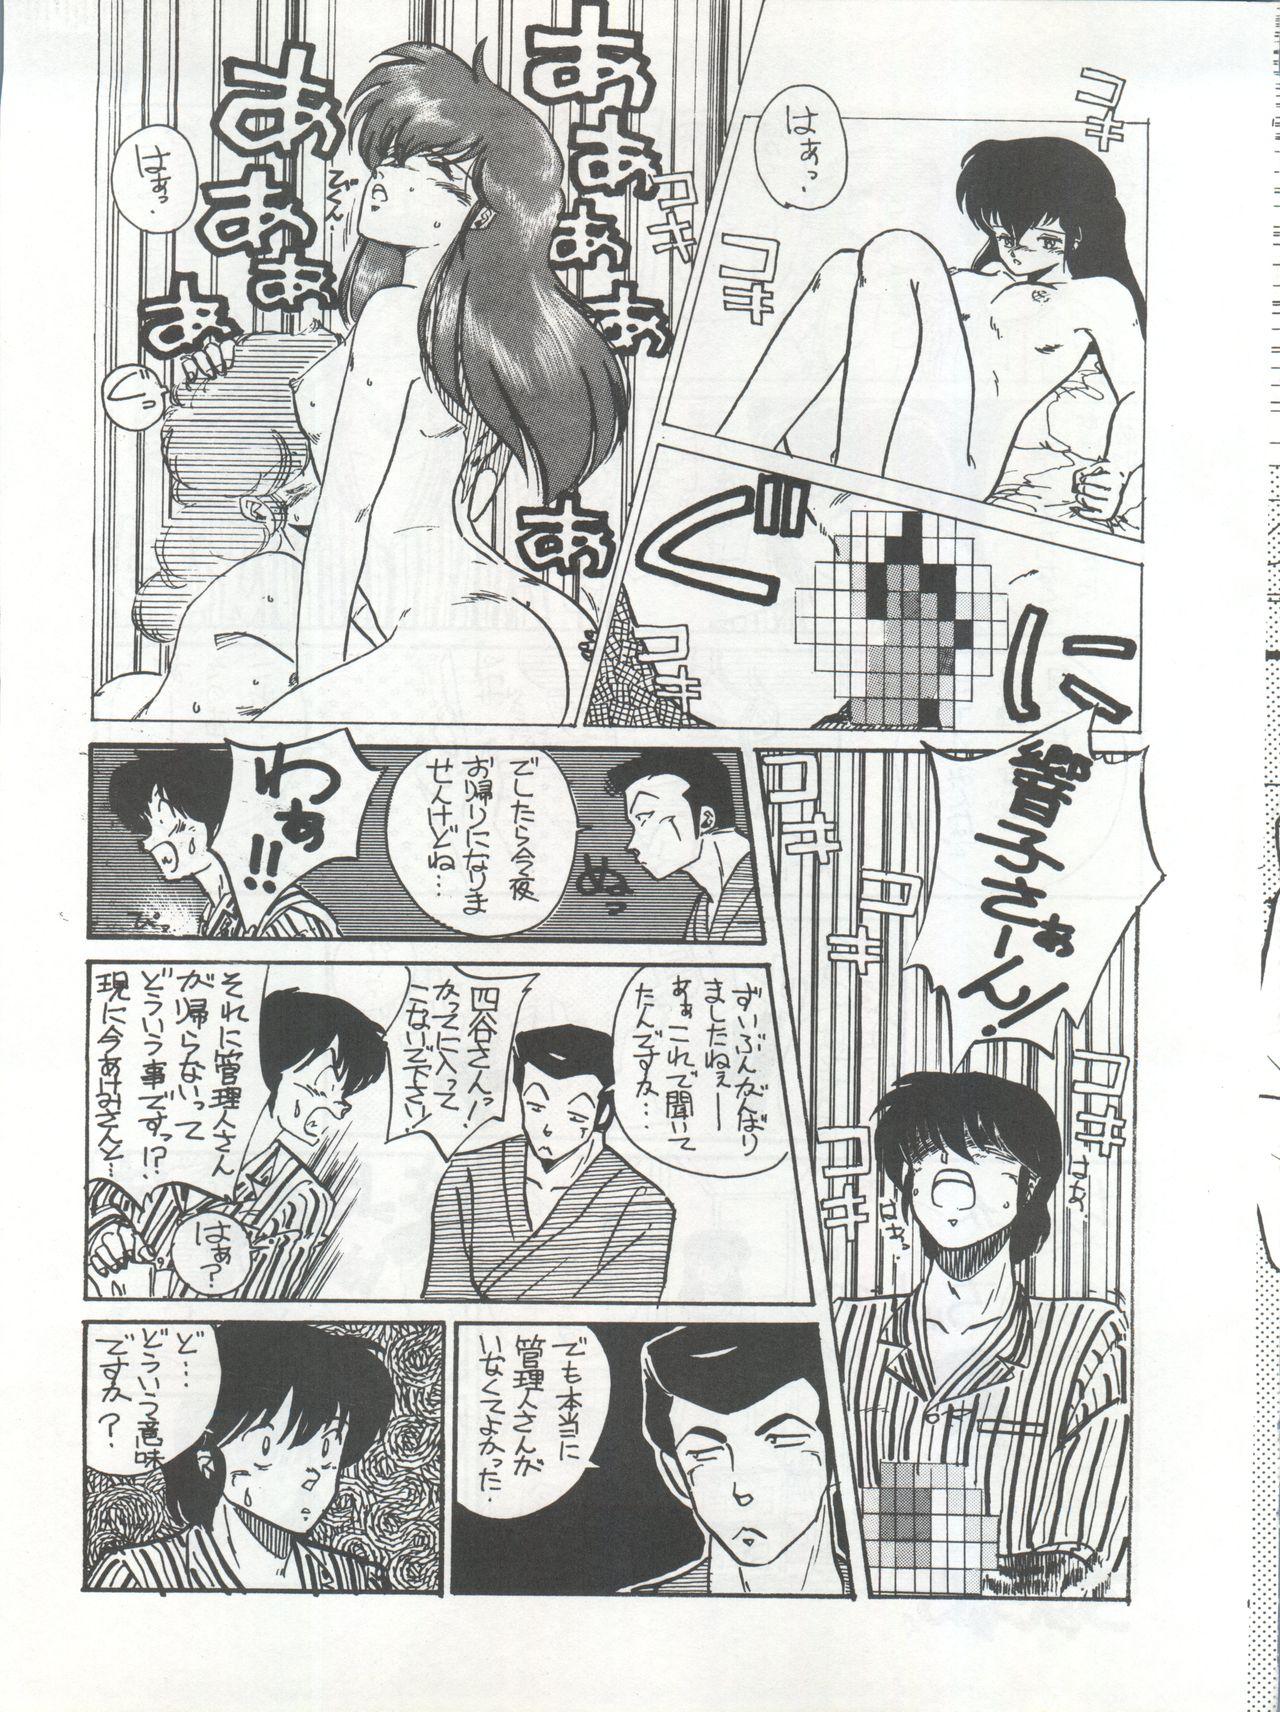 Machine Ikkoku-kan 0 Gou Shitsu Part III - Maison ikkoku Gay Masturbation - Page 11